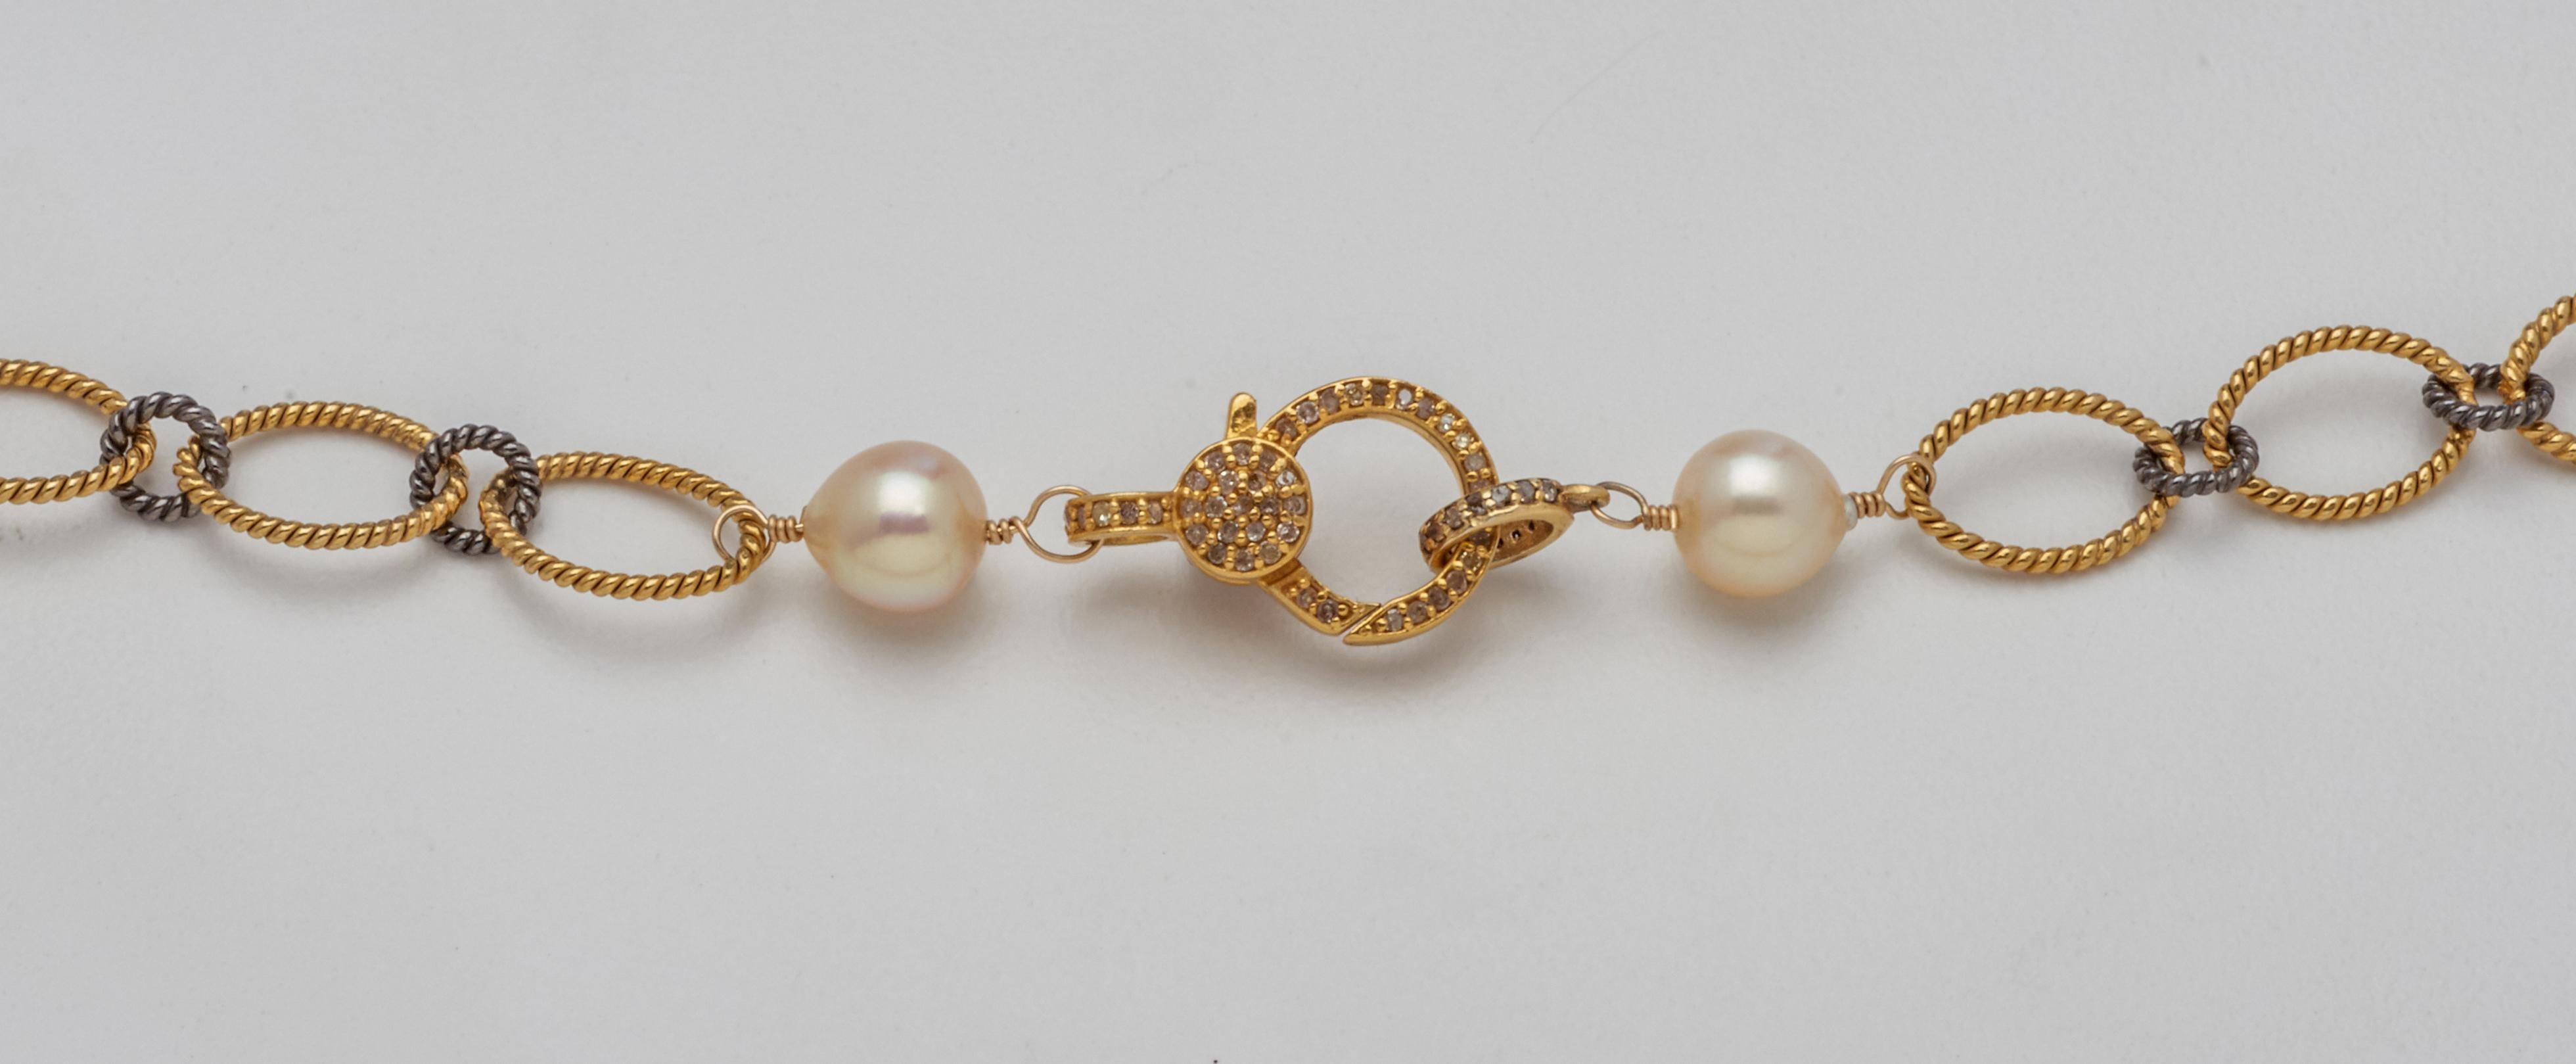 Une chaîne en argent 800 noirci et en vermeil crée l'intérêt de ce collier raffiné, adouci par quatorze perles Akoya lustrées de 7,7 mm qui lui confèrent une sophistication décontractée. D'une longueur polyvalente de trente-trois pouces, cette pièce